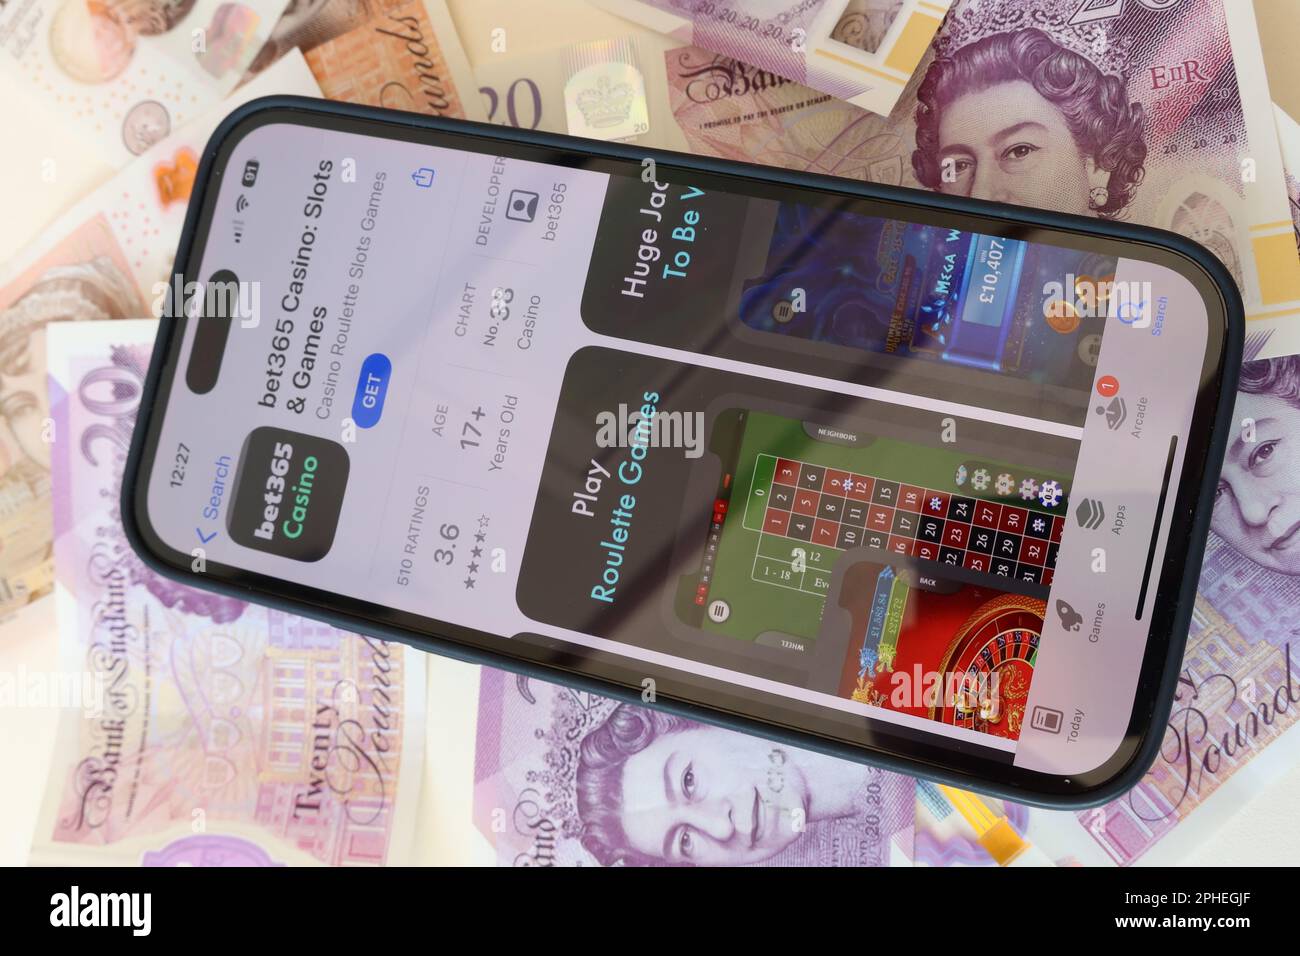 Bet365 Casino online e smartphone, slot machine e gioco d'azzardo con note in sterline inglesi, denaro facilmente perso - BeGambleAware Foto Stock